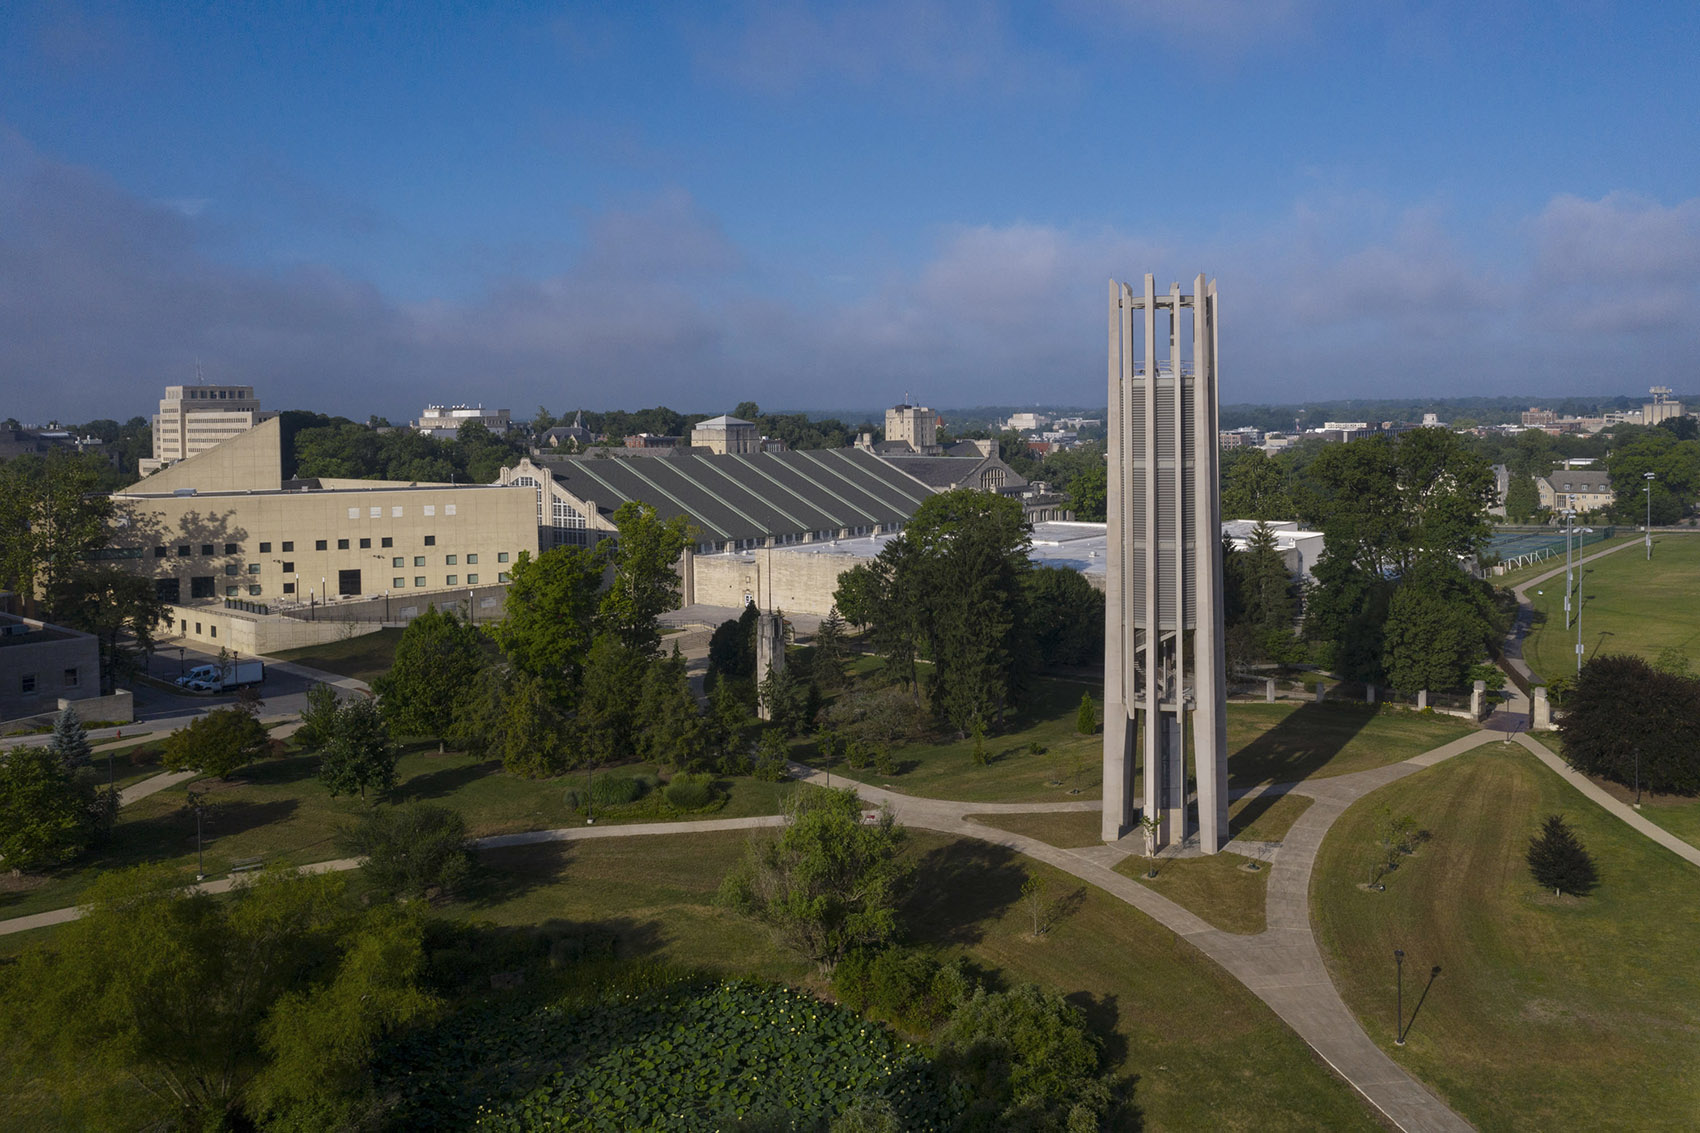 印第安纳大学钟琴塔，美国/印第安纳大学两百周年校庆的纪念钟塔-30